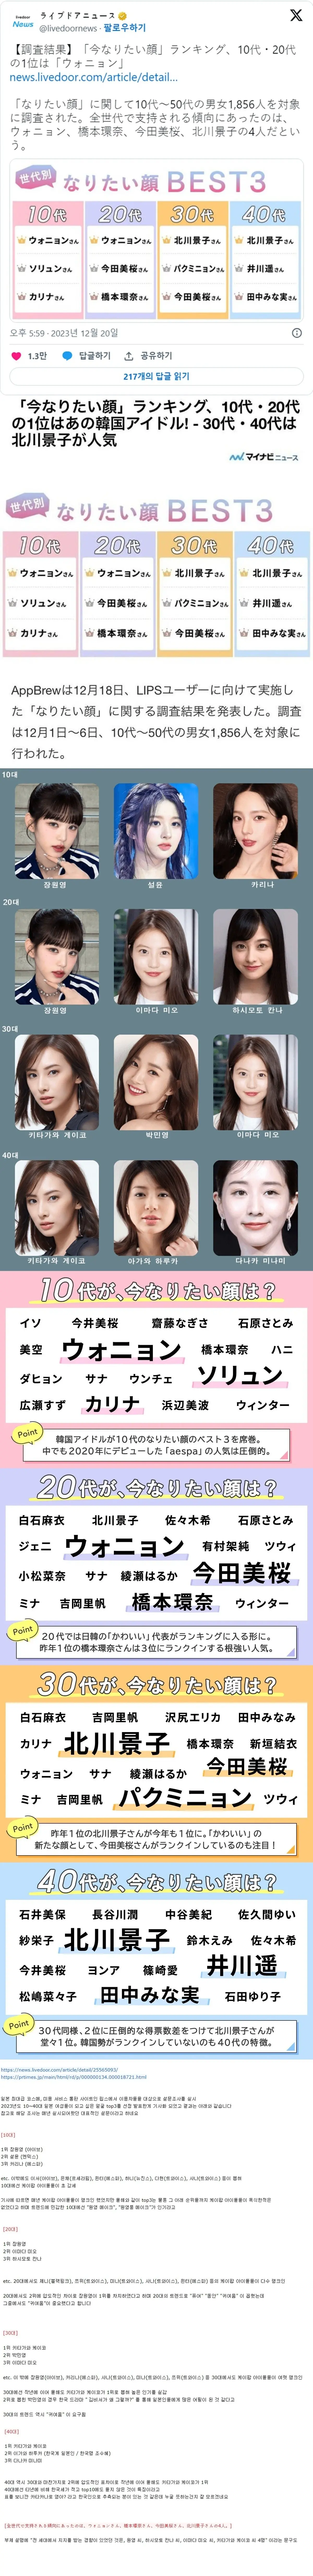 2023 10~40대 일본 여성들이 되고 싶은 얼굴 (feat. 세부내용) | mbong.kr 엠봉